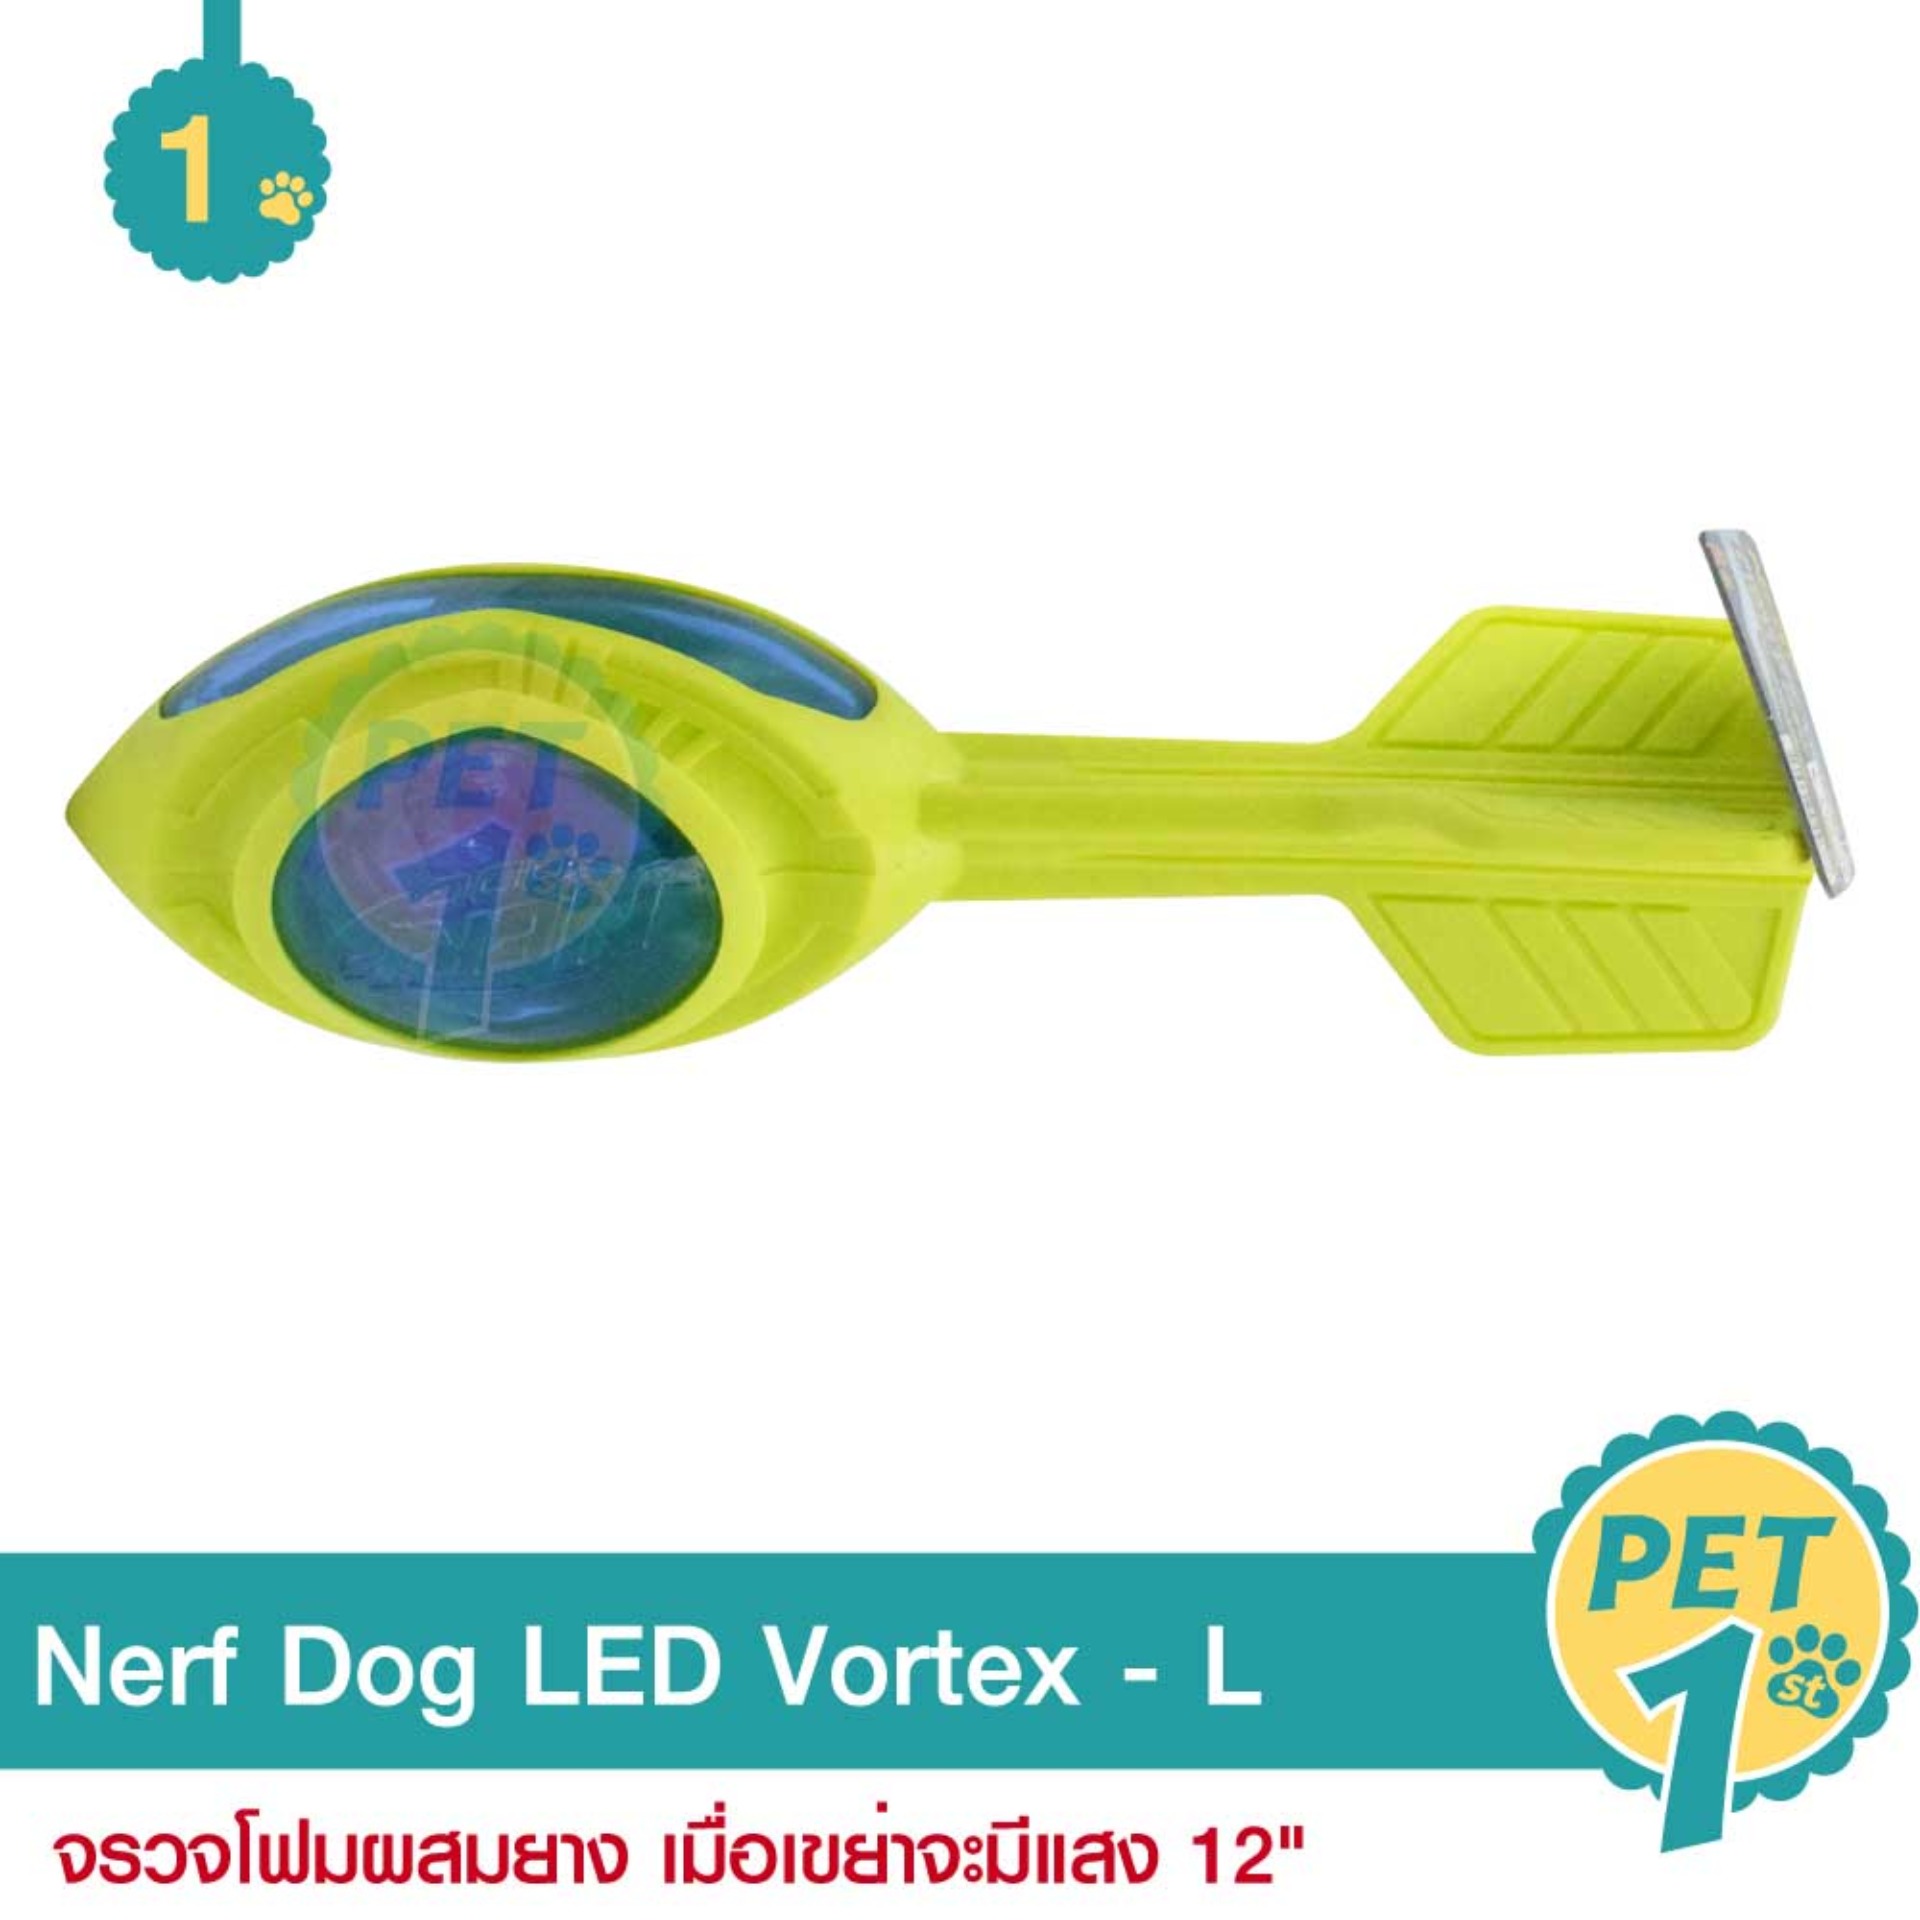 Nerf Dog LED Vortex Size L ของเล่นสุนัข จรวจโฟมผสมยาง เมื่อเขย่าจะมีแสง สำหรับสุนัข ขนาด 30 ซม. (12)